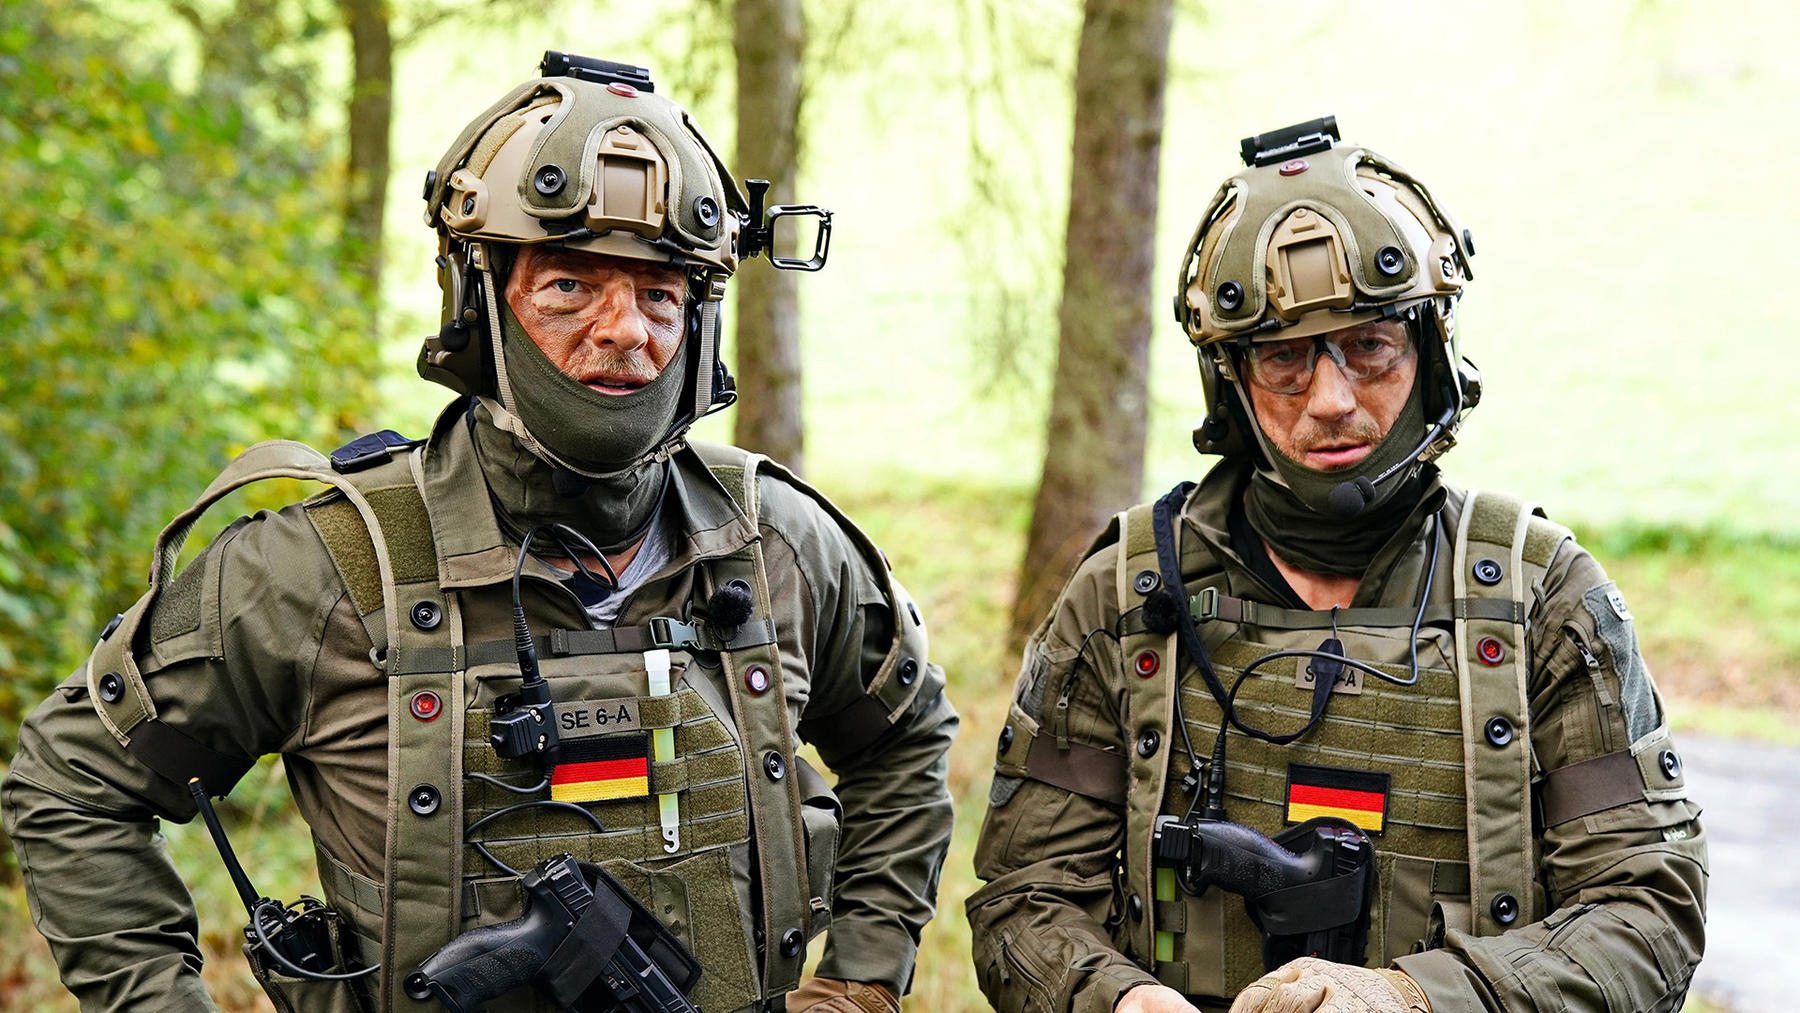 Folge 1 vom 24.02.2022 | Baum & Möhring - Im Einsatz mit deutschen Spezialeinheiten | Staffel 1 | RTL+